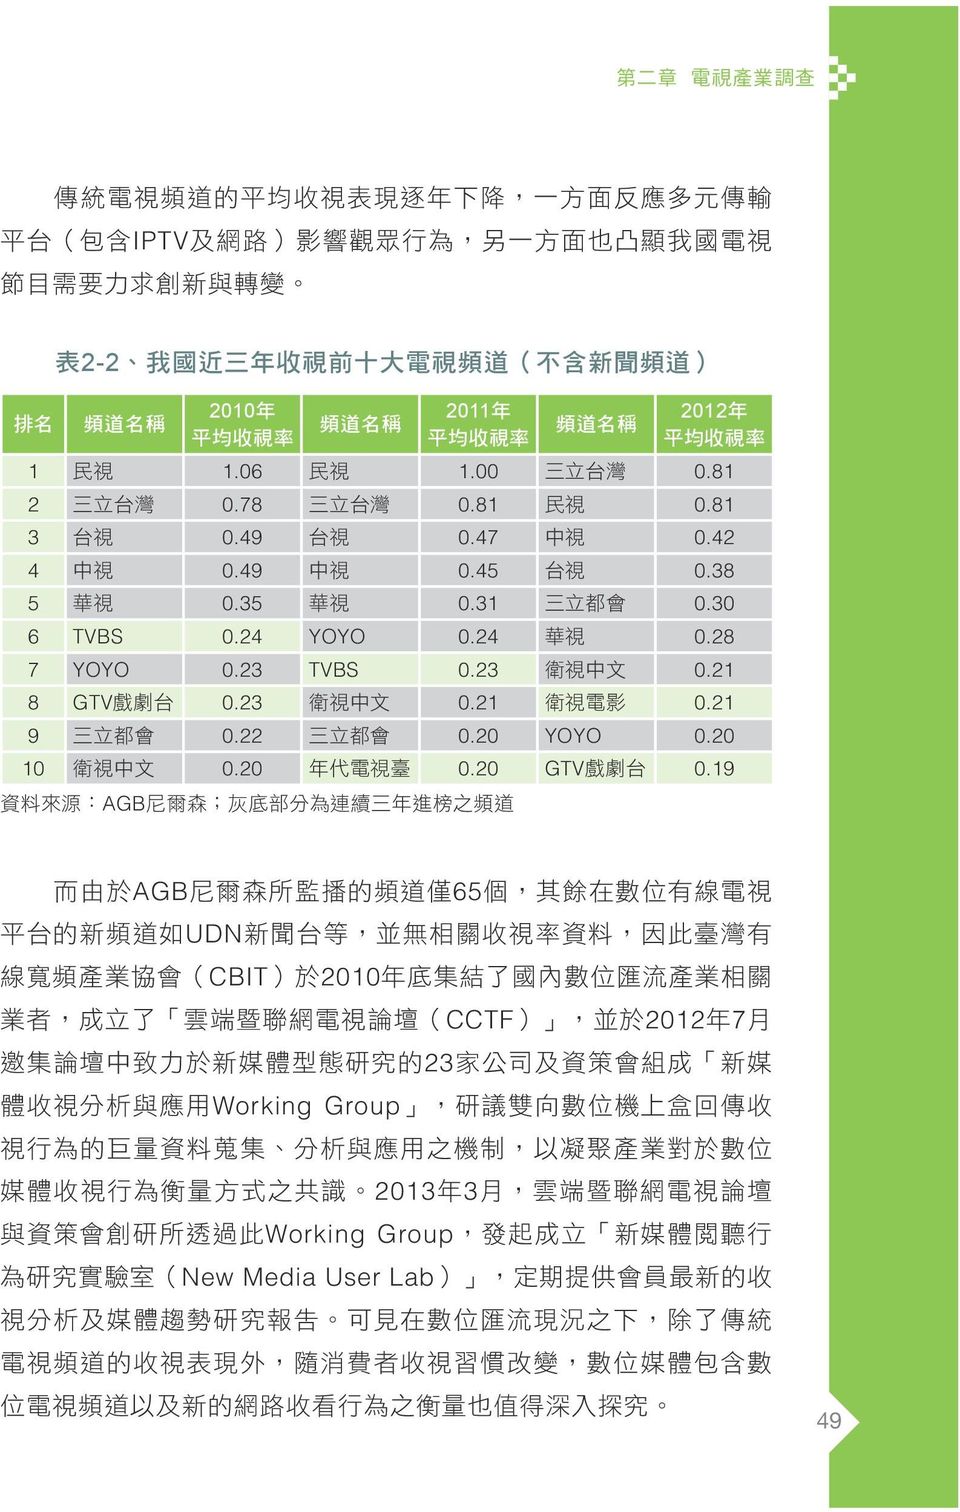 23 衛 視 中 文 0.21 衛 視 電 影 0.21 9 三 立 都 會 0.22 三 立 都 會 0.20 YOYO 0.20 10 衛 視 中 文 0.20 年 代 電 視 臺 0.20 GTV 戲 劇 台 0.